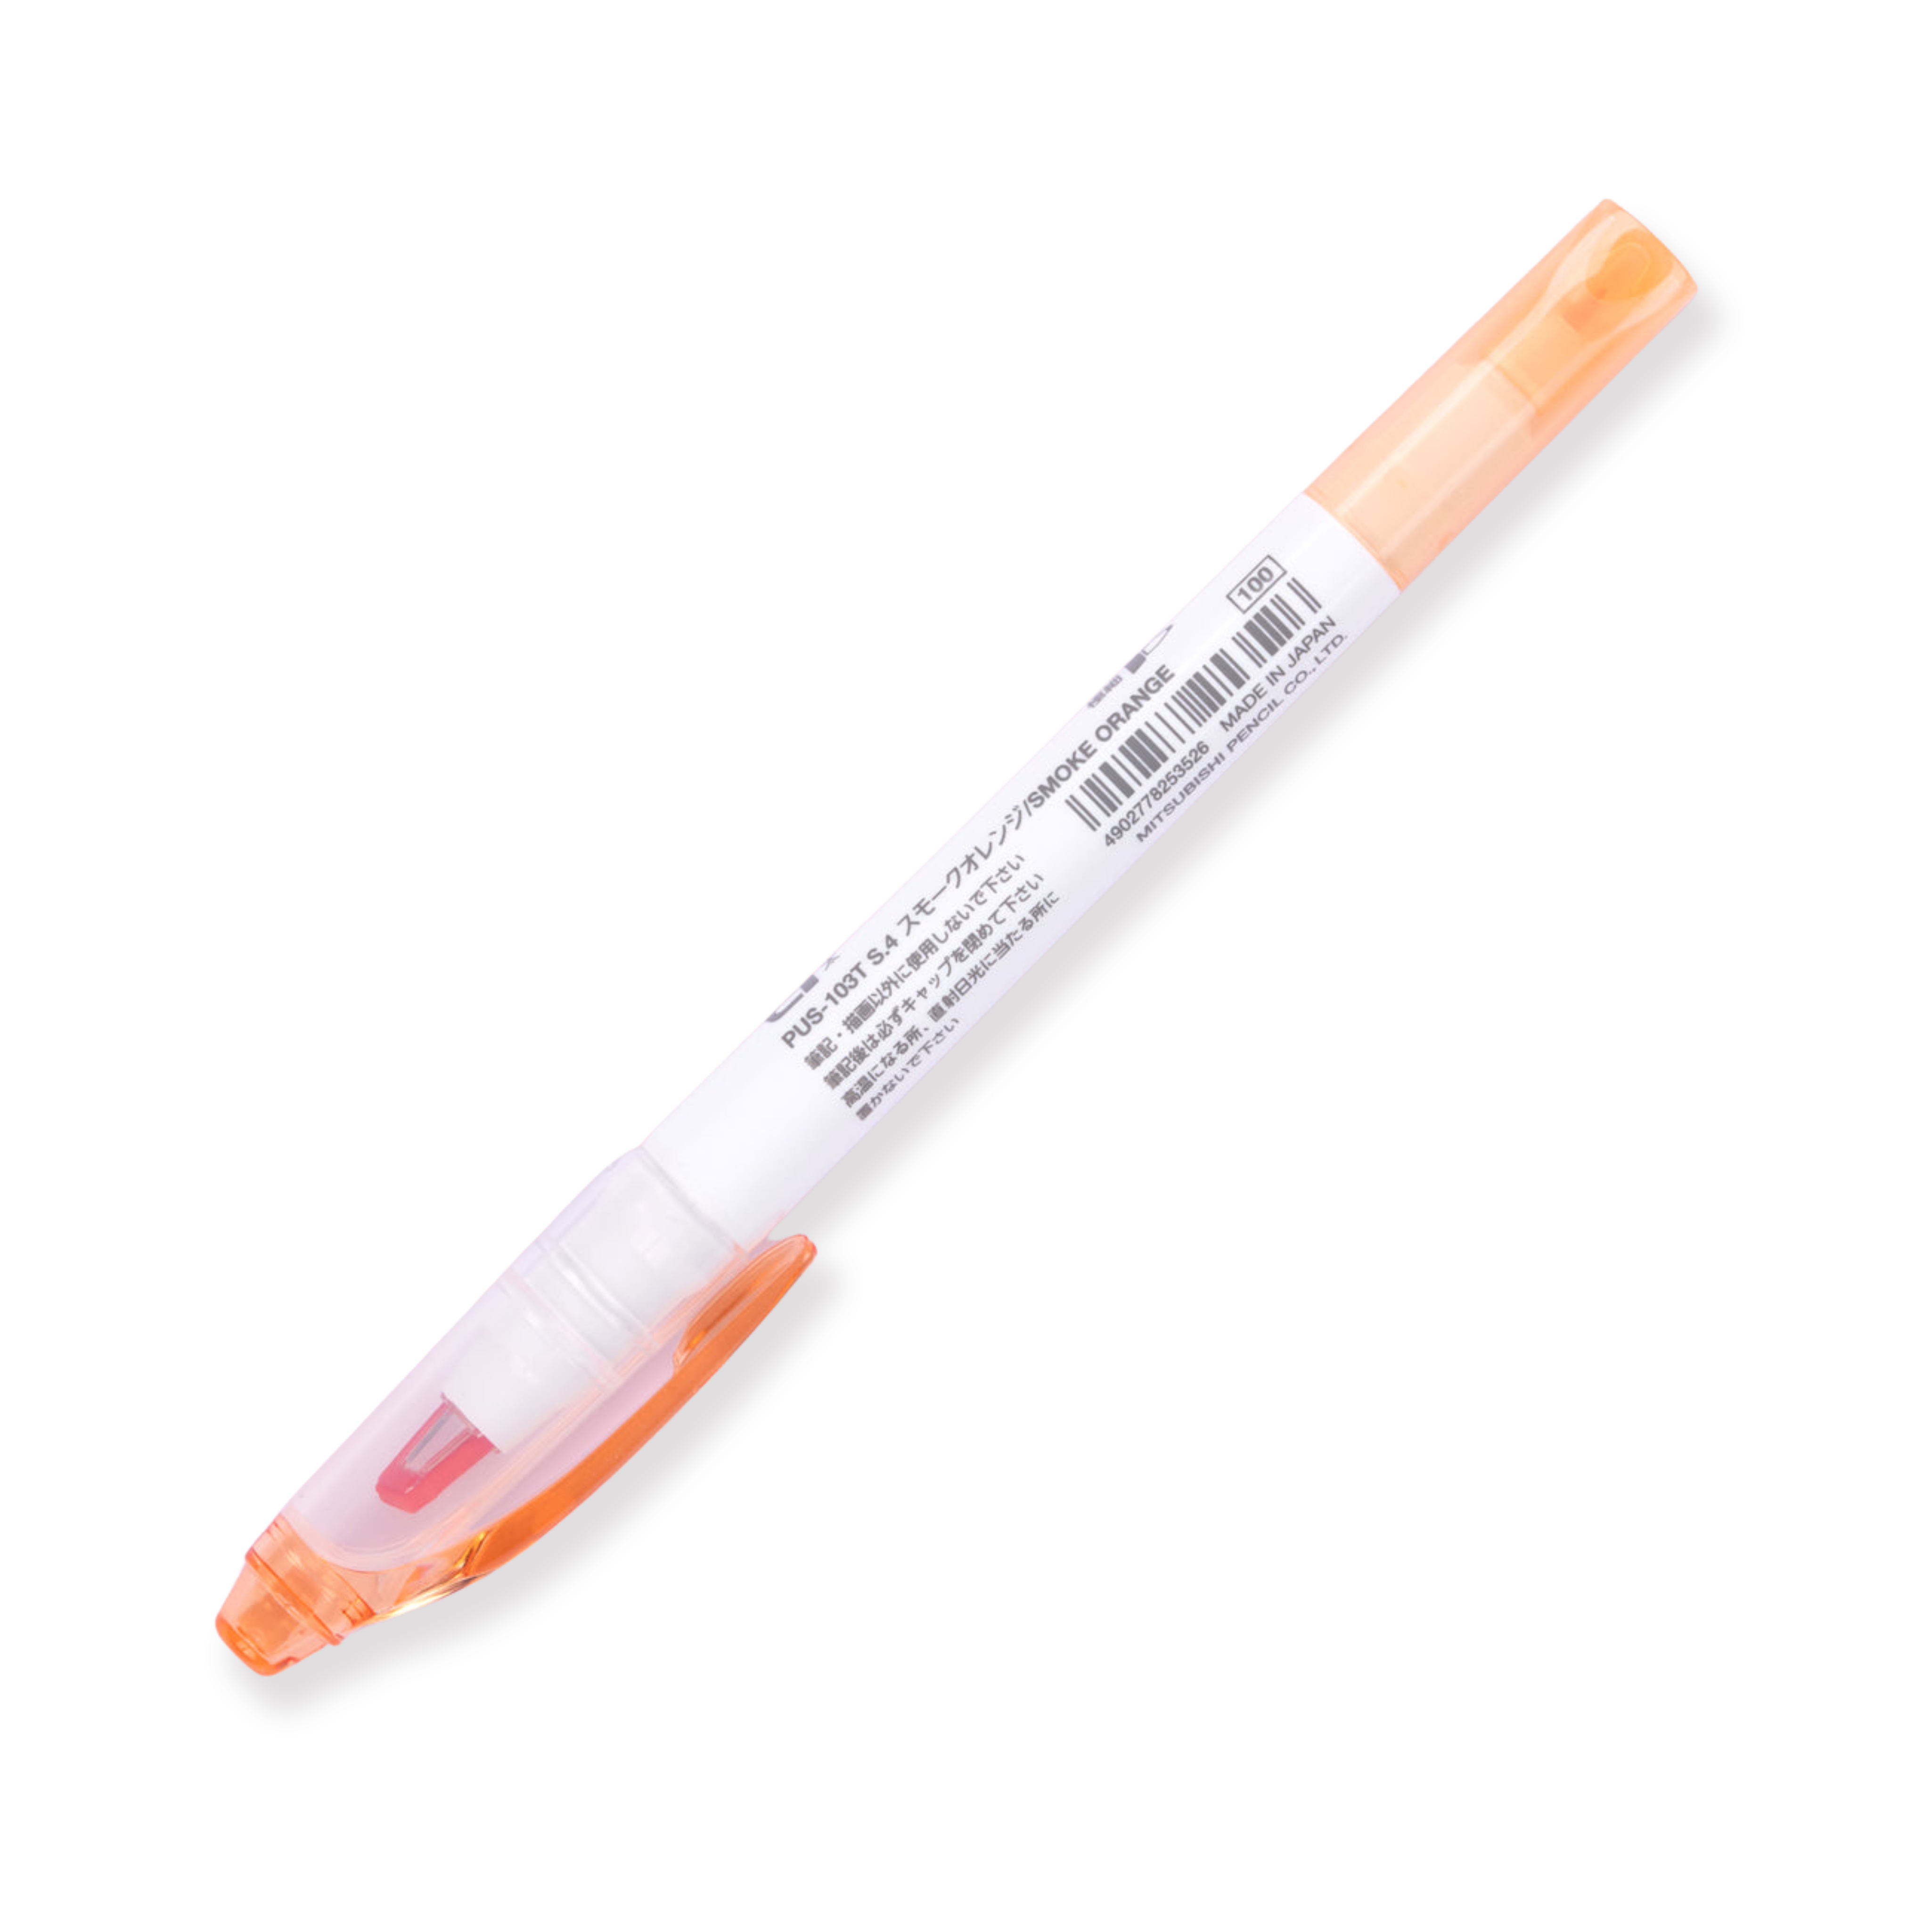 Resaltador de doble cara Uni Propus Window - Naranja ahumado - Nuevo color 2020